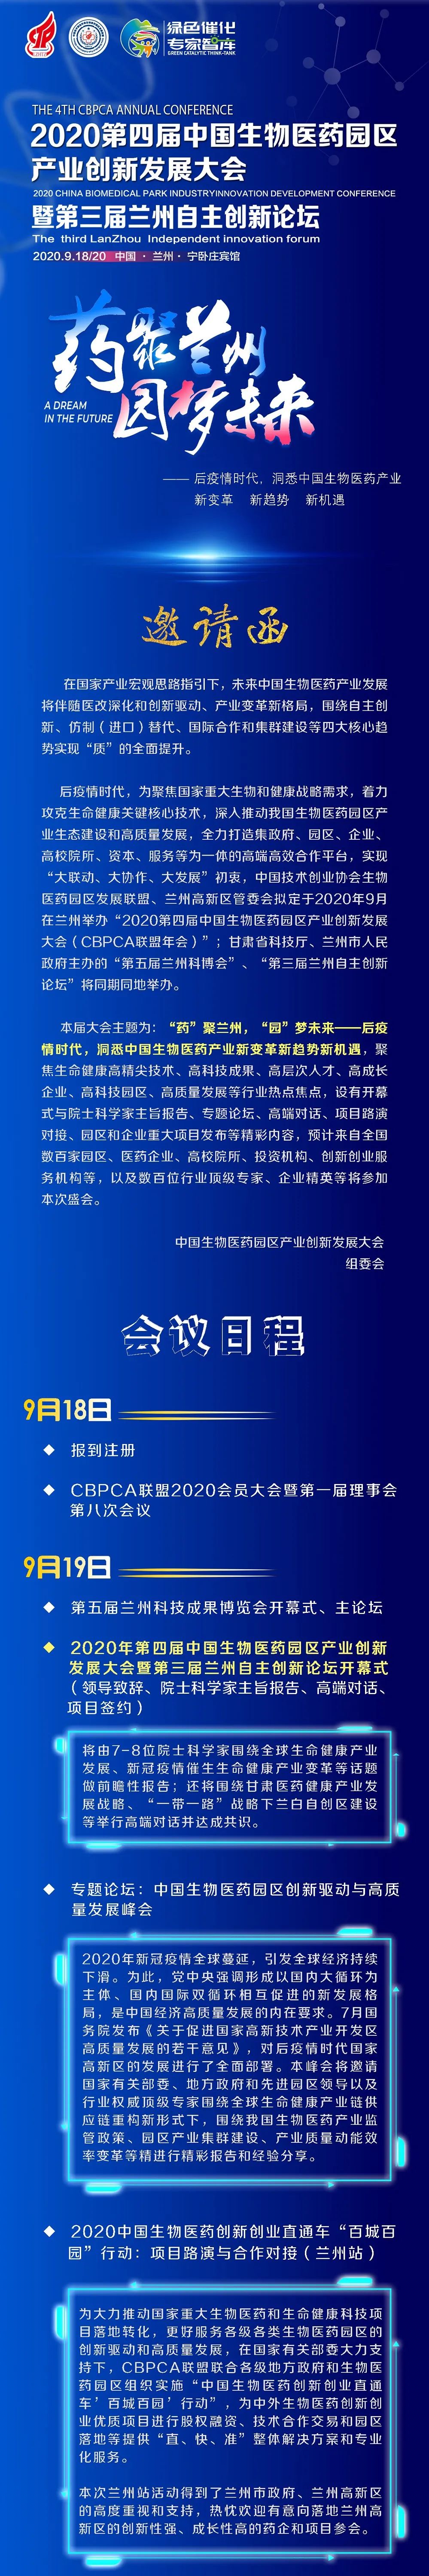 中国生物医药园区产业创新发展大会1.jpg